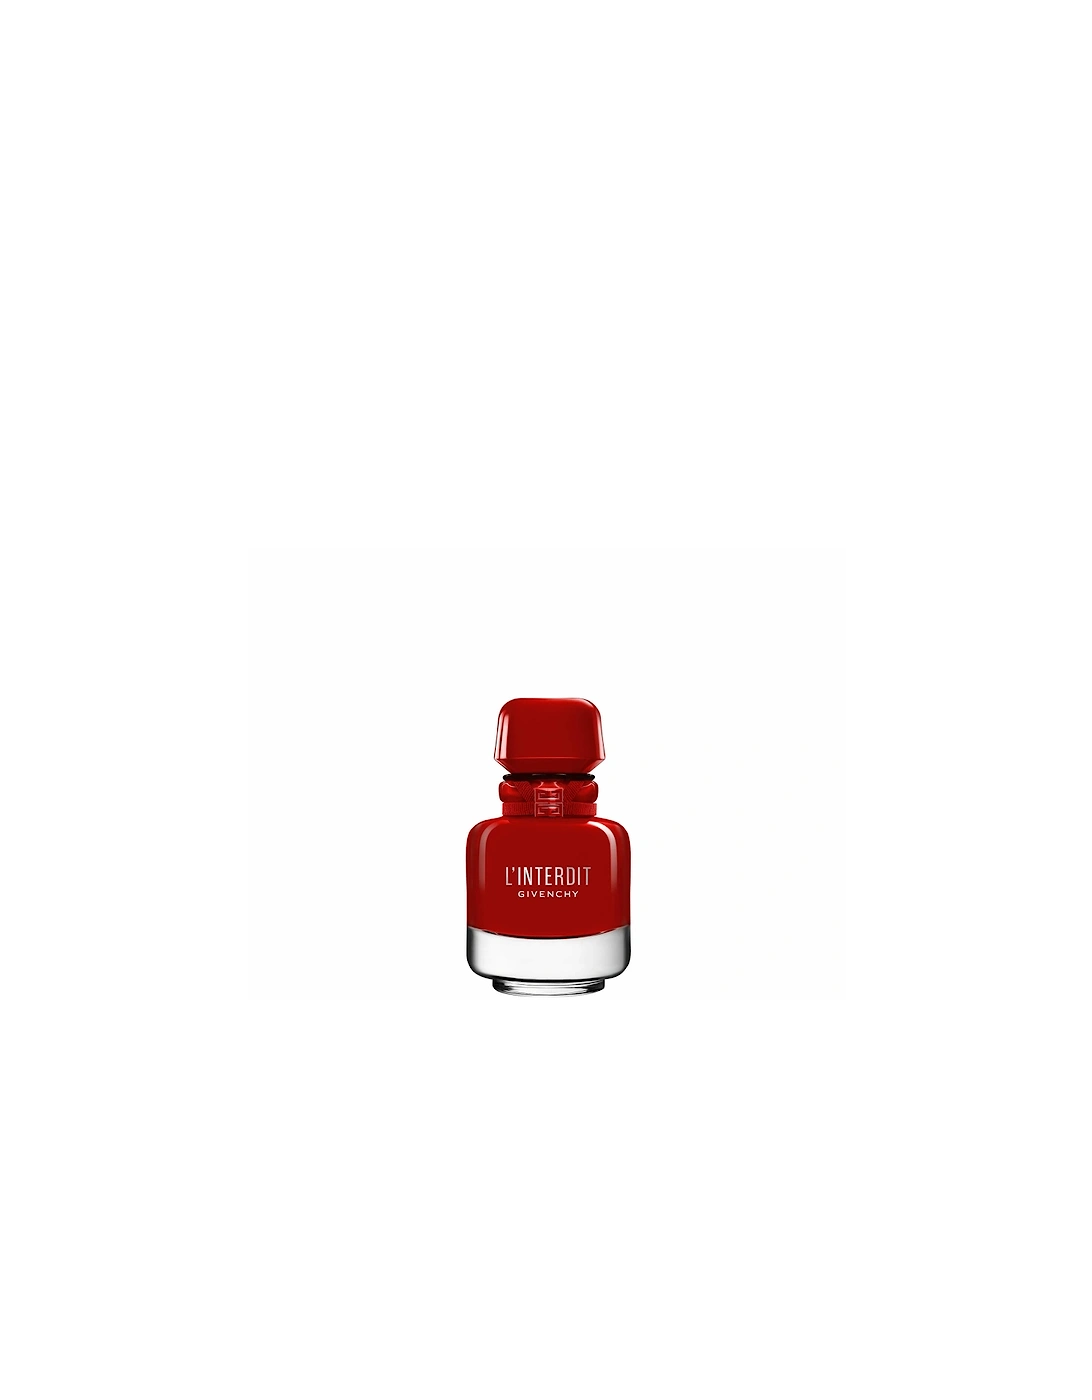 L'Interdit Rouge Ultime Eau de Parfum 35ml, 2 of 1